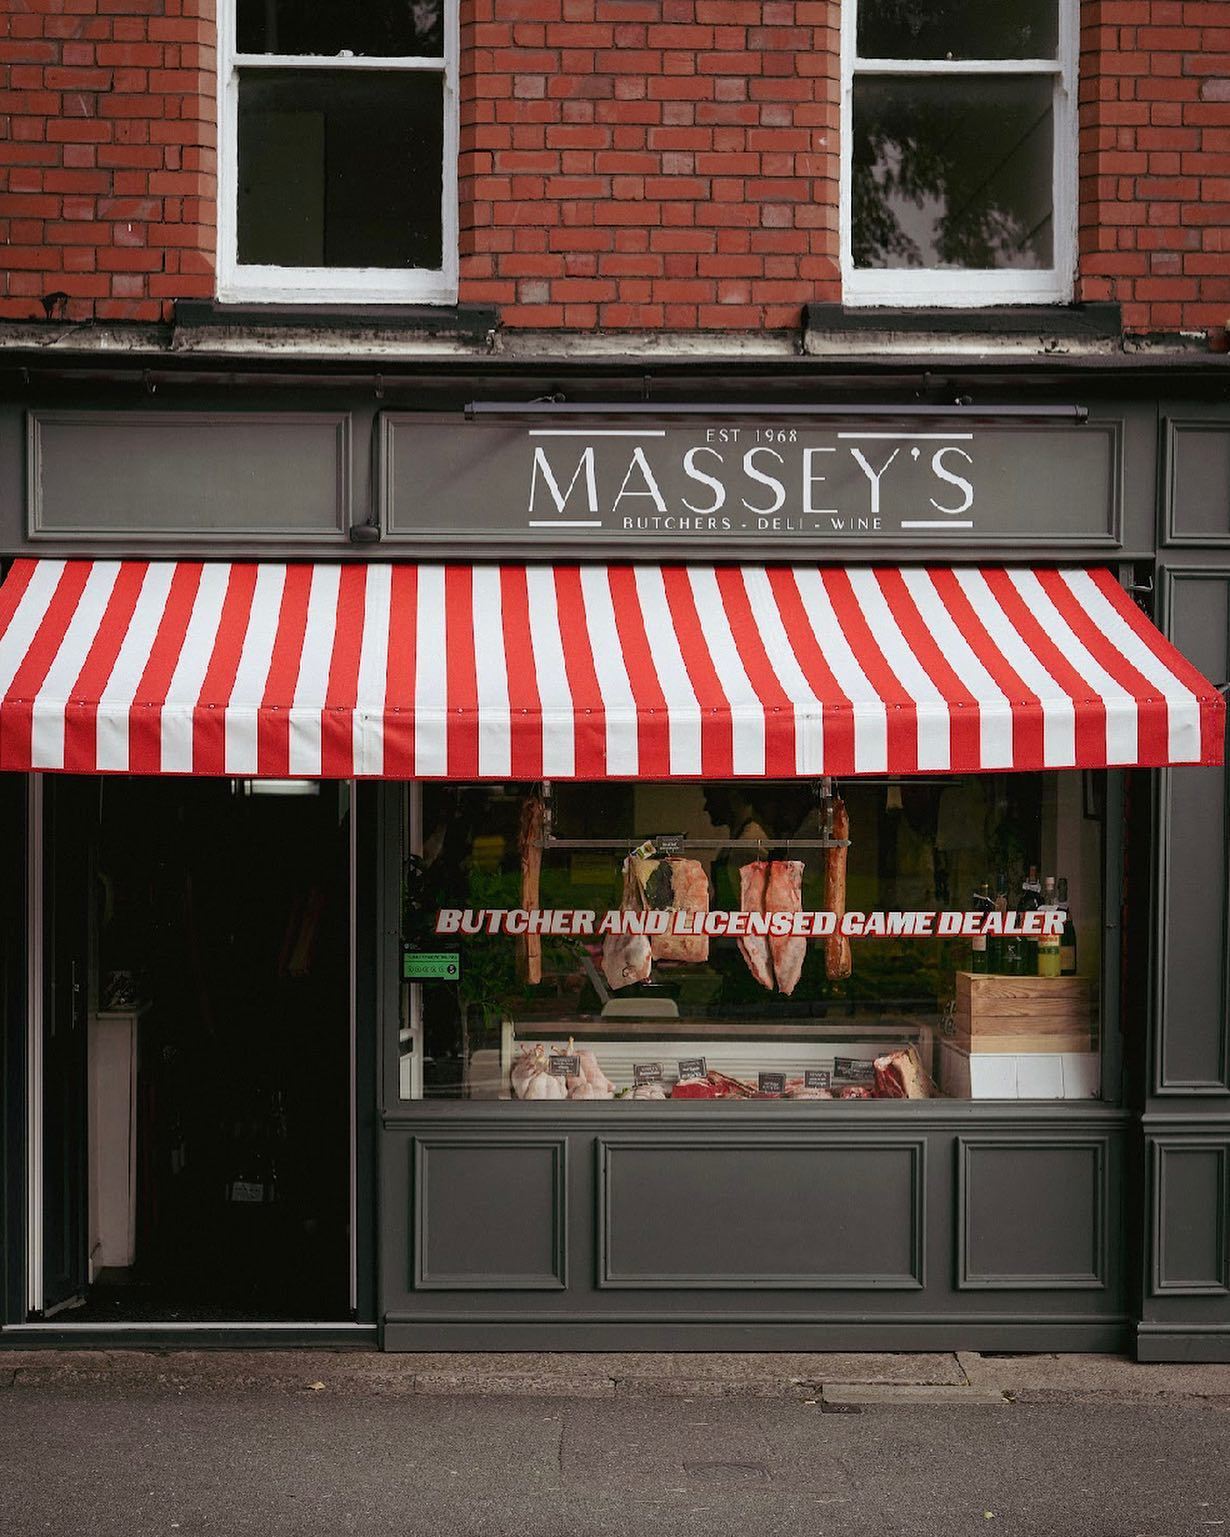 Masseys Butchers, Delicatessen & Wine Merchant